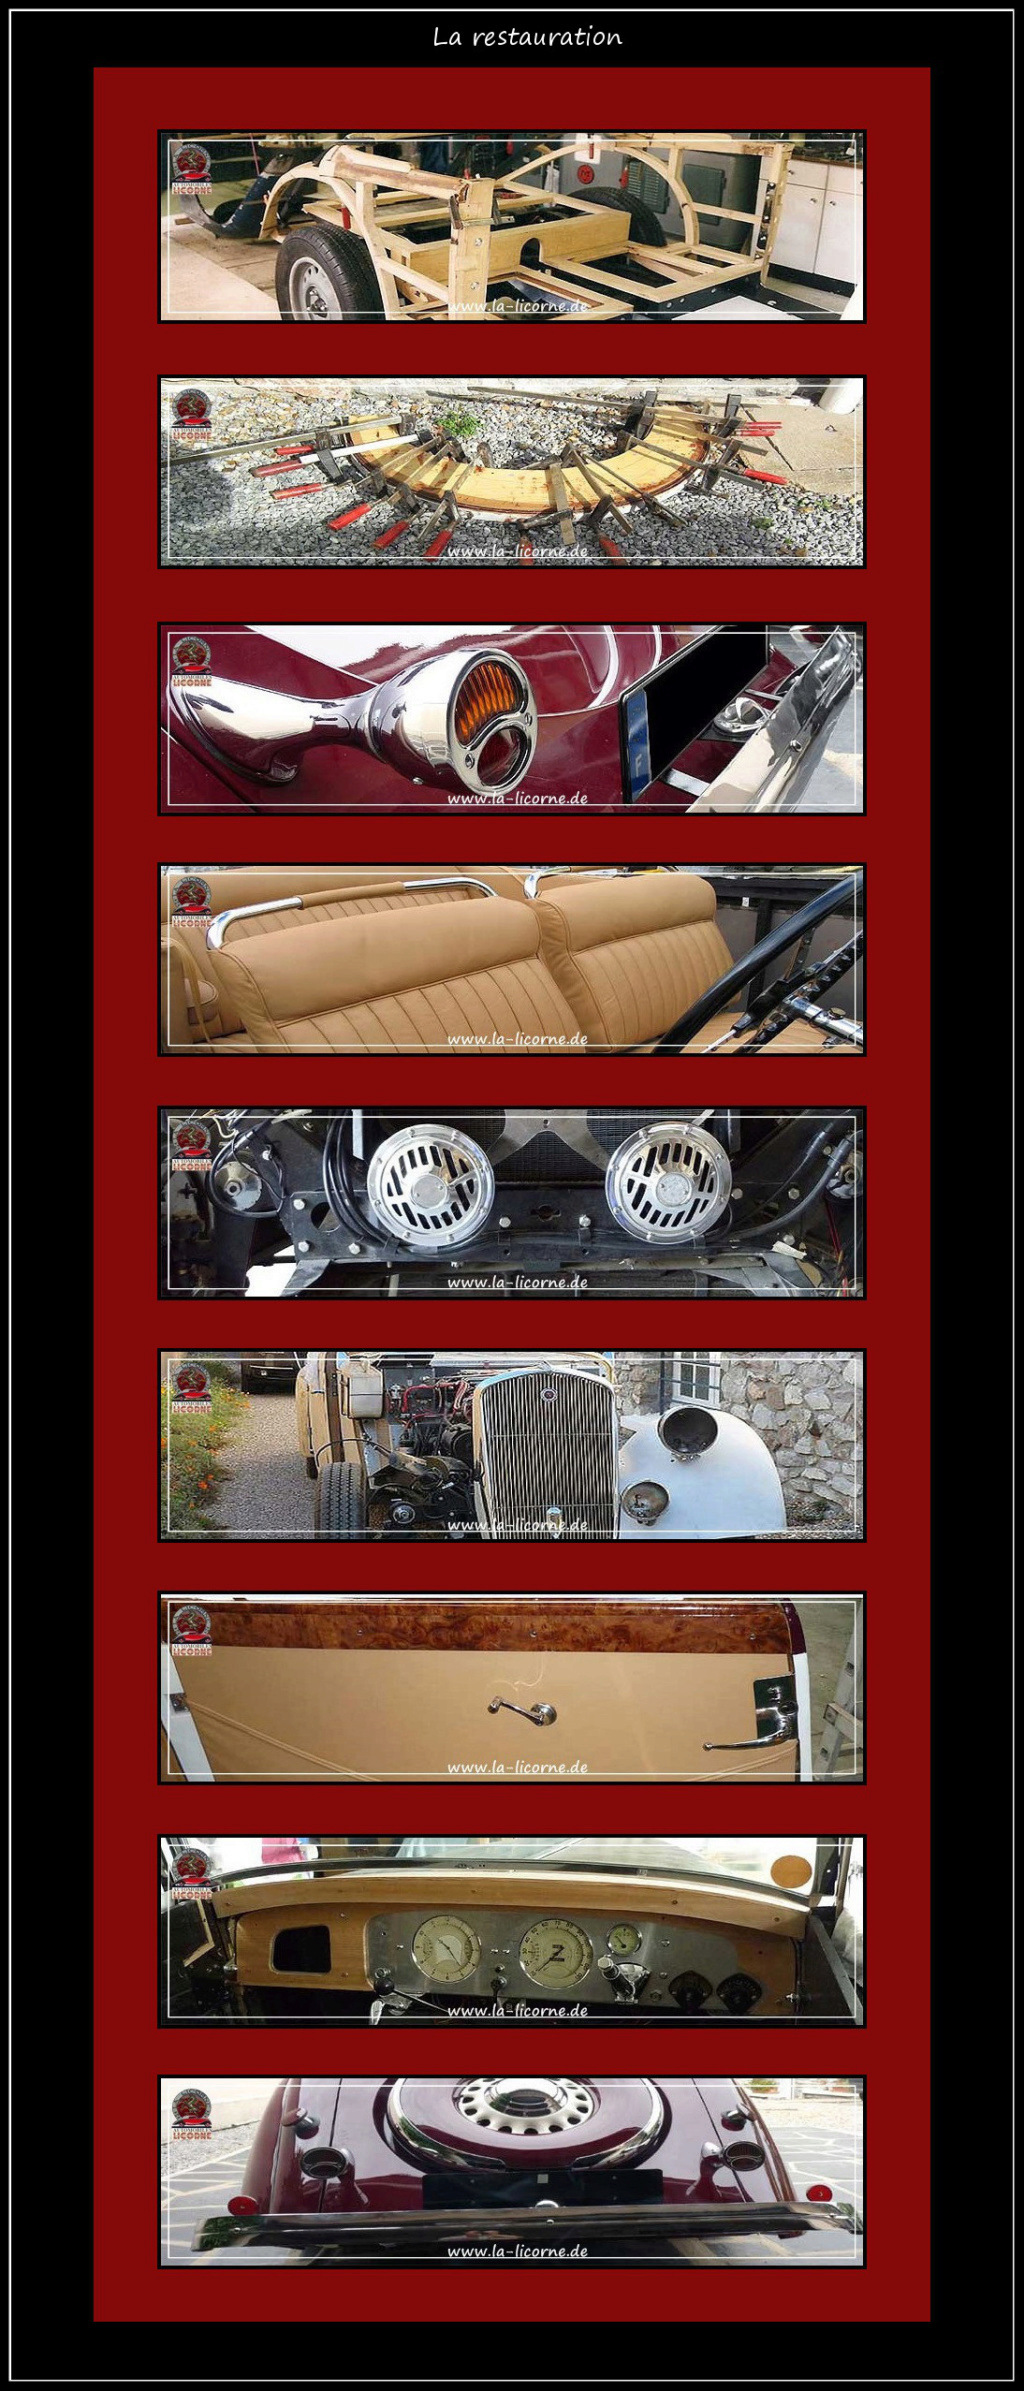 La restauration de mon cabriolet 420 LS2 de 1936, de A à Z: Les photos. Seite_21